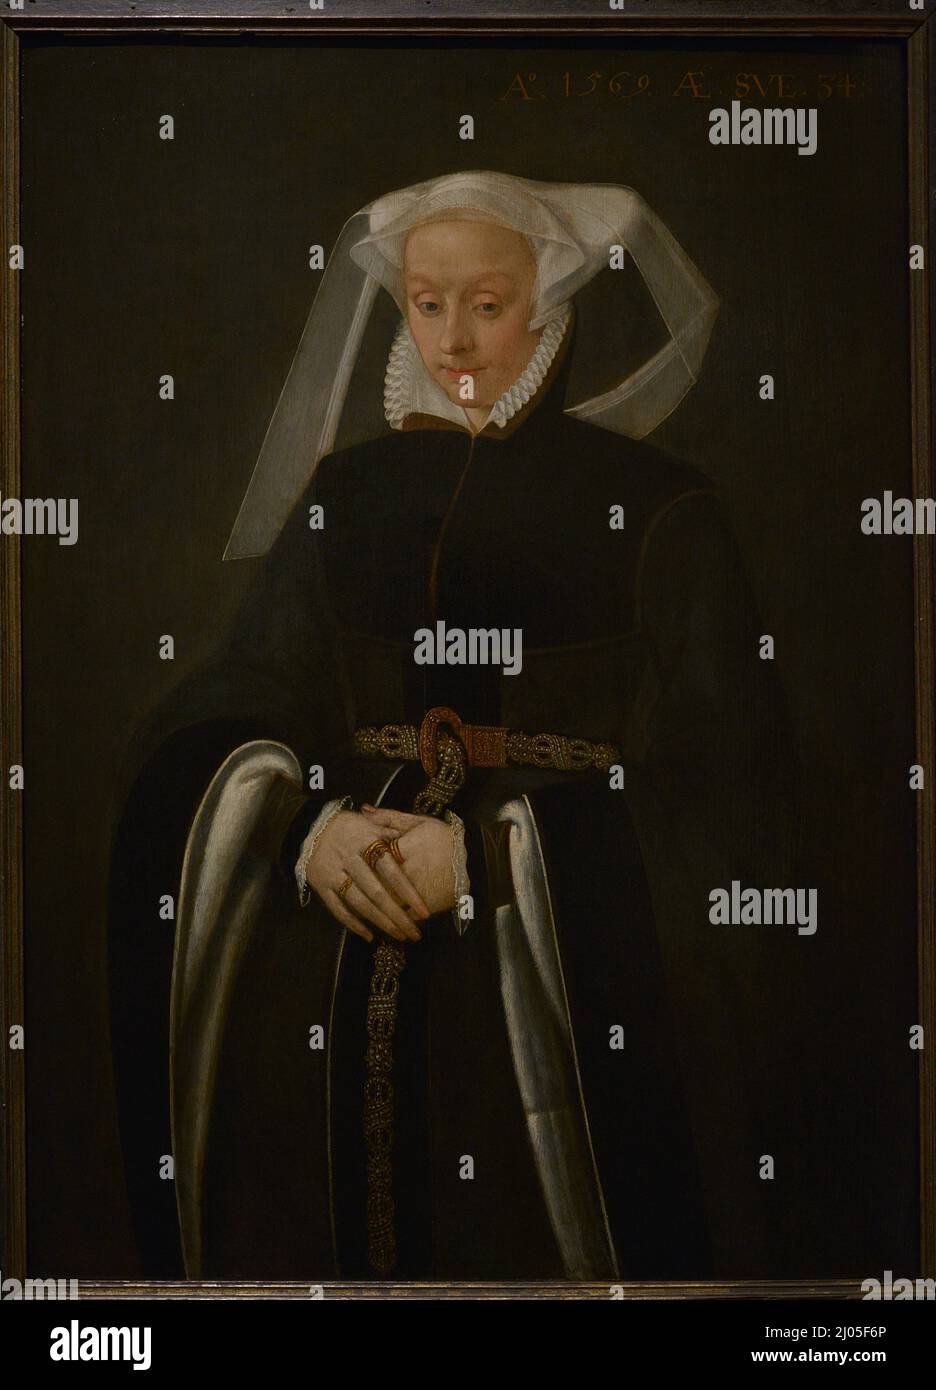 Portrait de femme, 1569. Maître flamand inconnu. Huile sur le panneau. Musée national d'Art ancien Lisbonne, Portugal. Banque D'Images